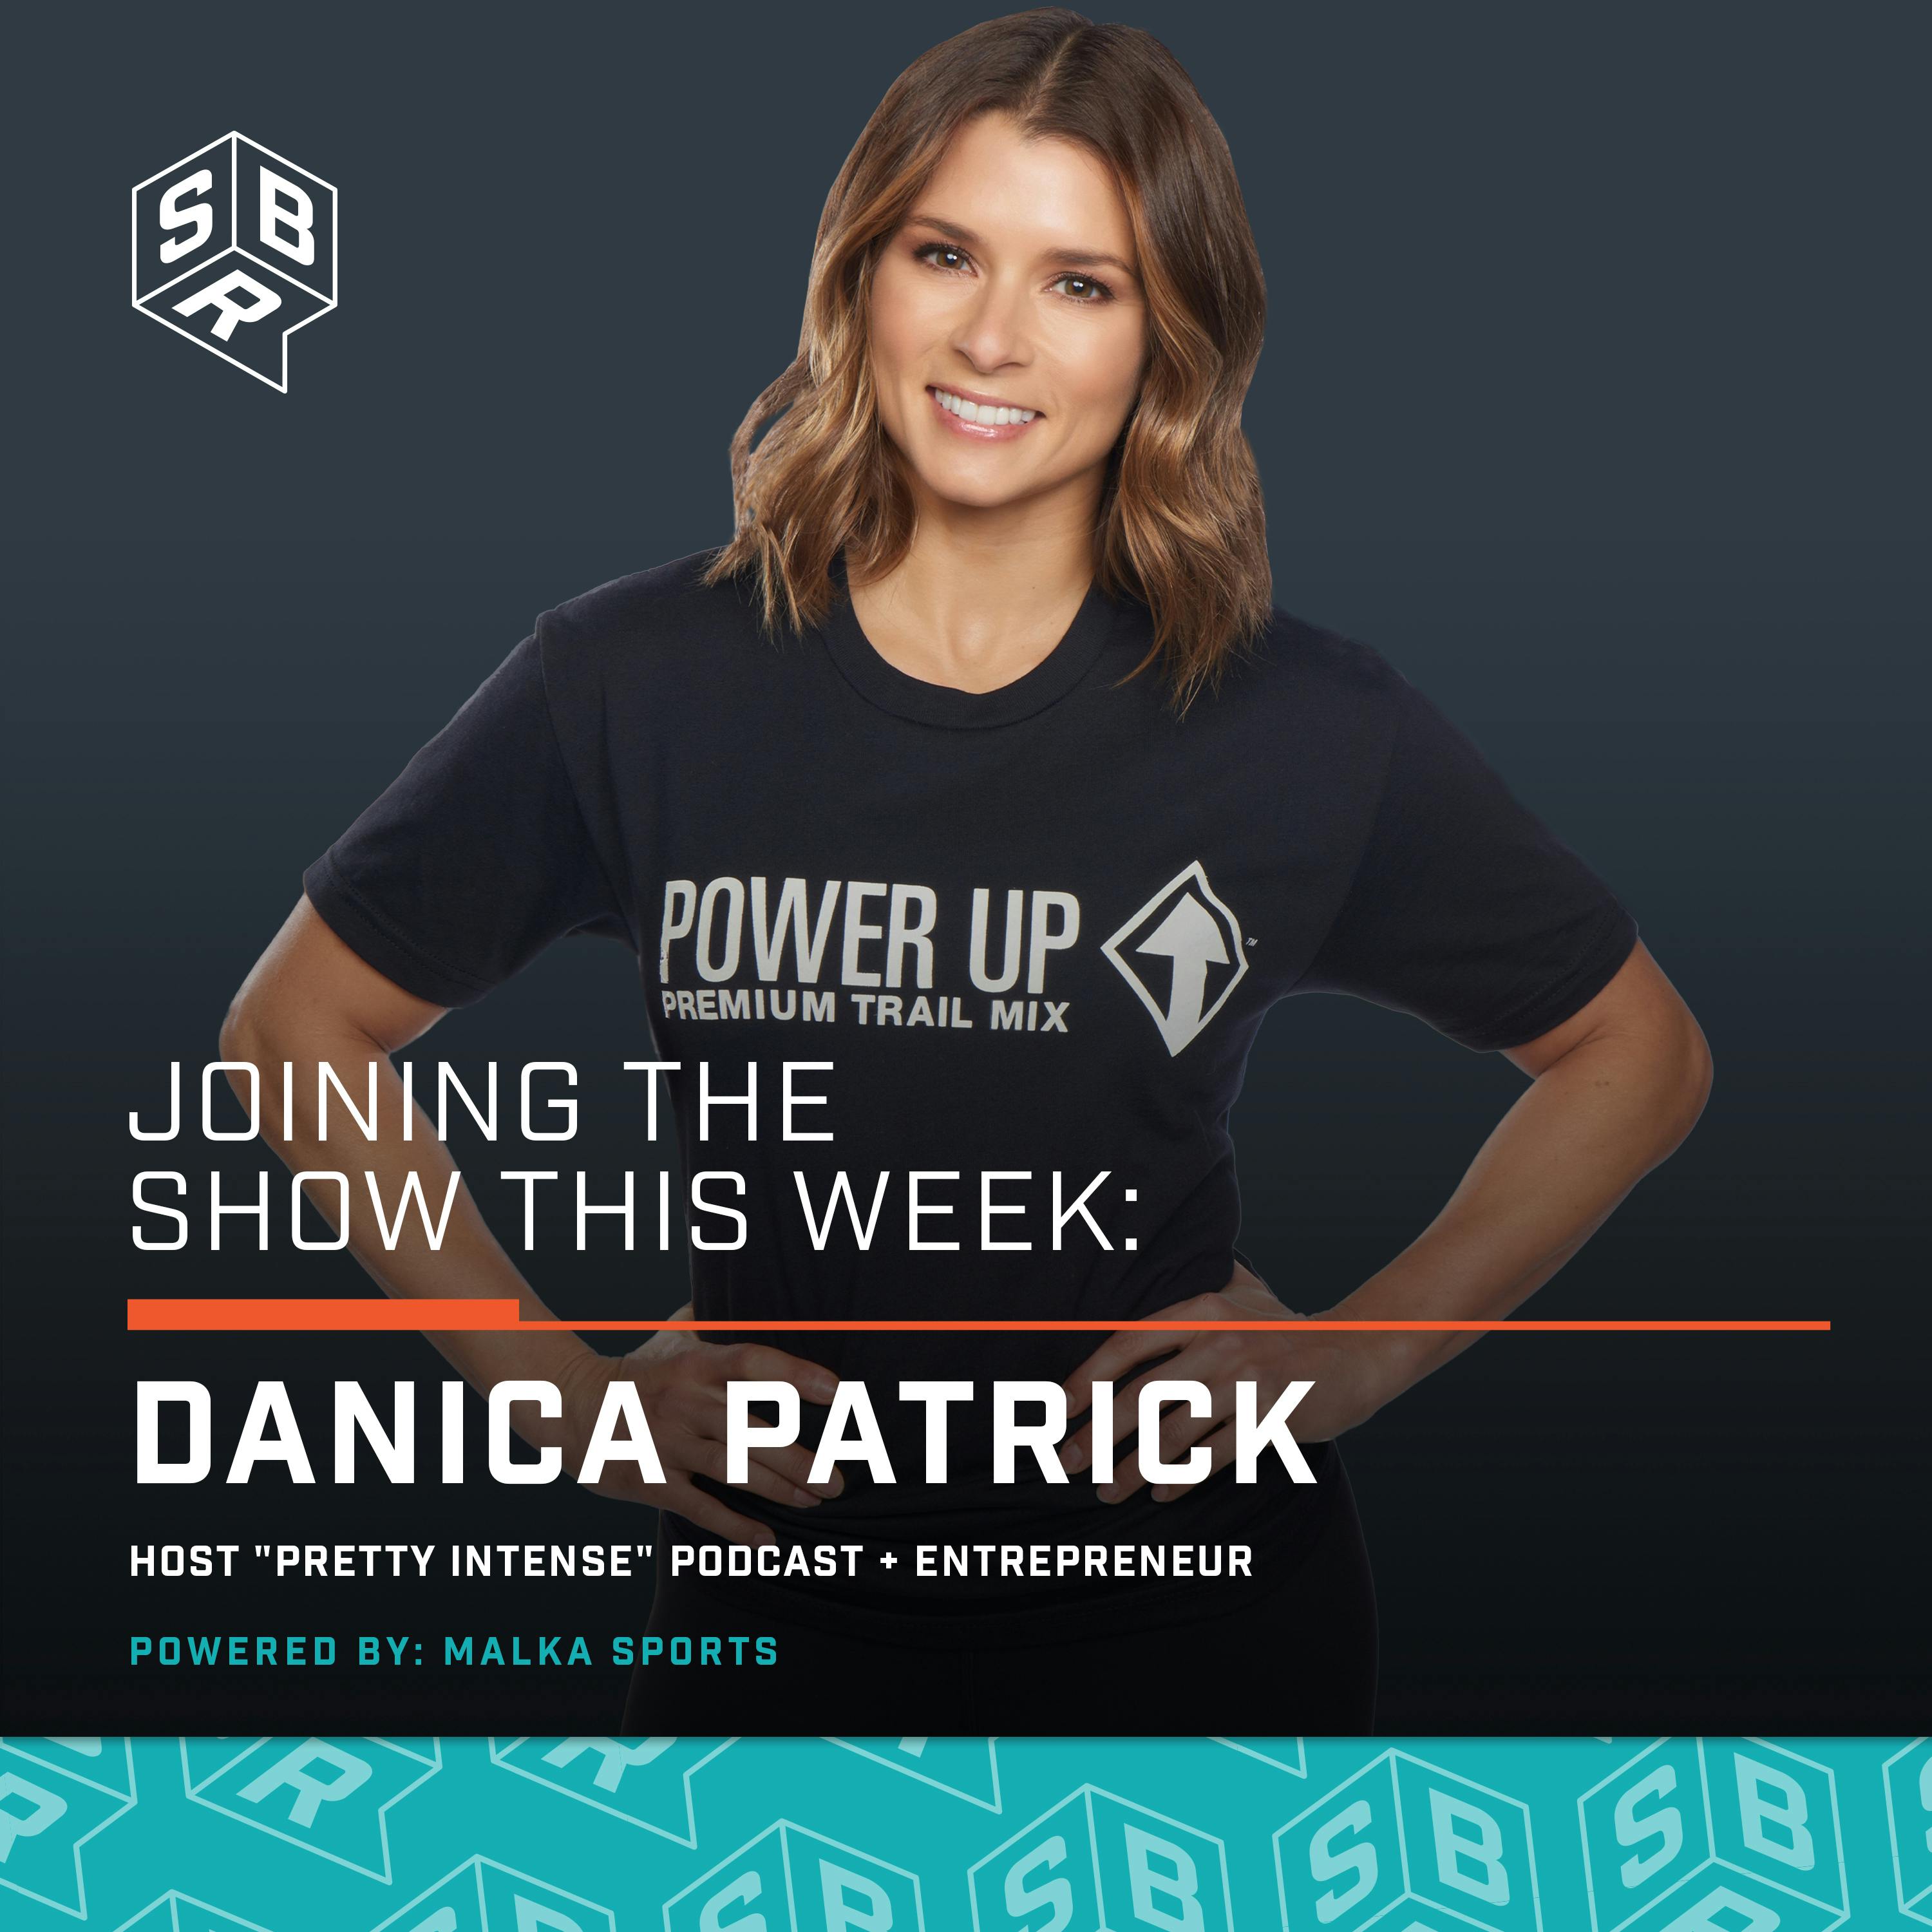 Danica Patrick (@DanicaPatrick) - Entrepreneur + 